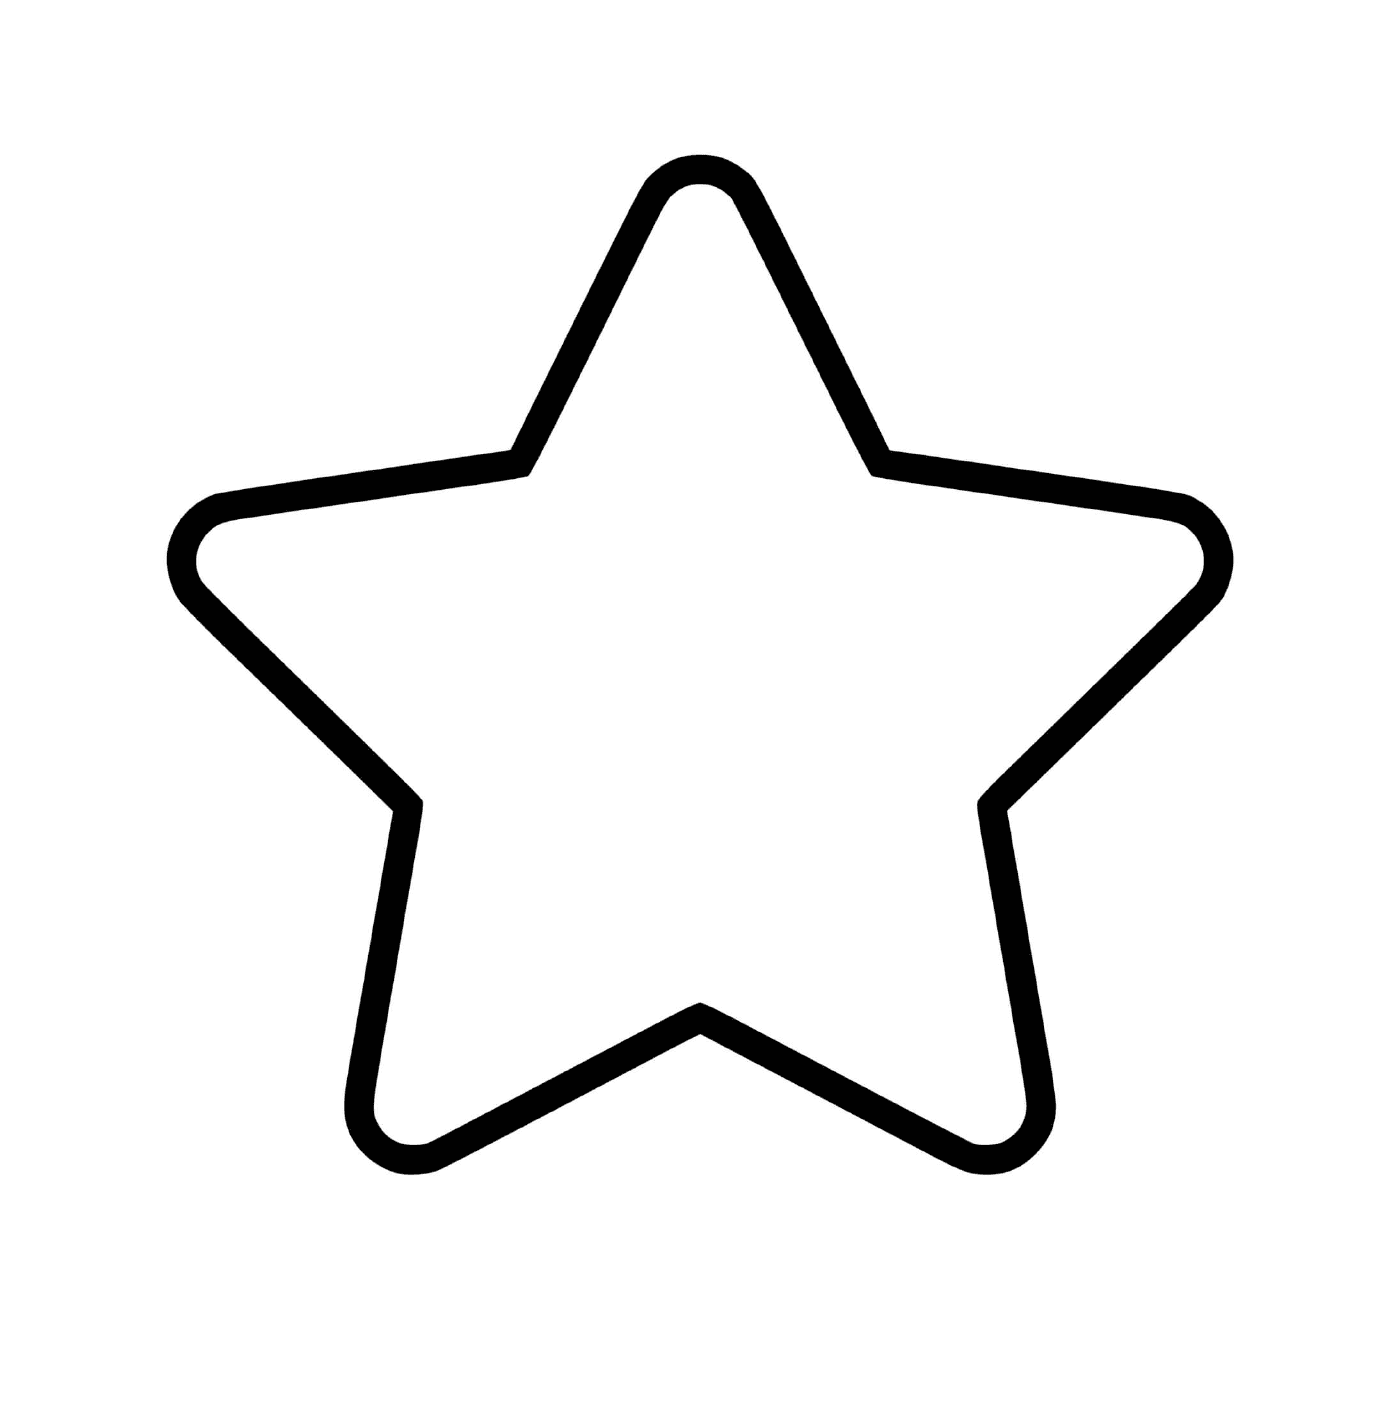  Una estrella que es fácil de dibujar 